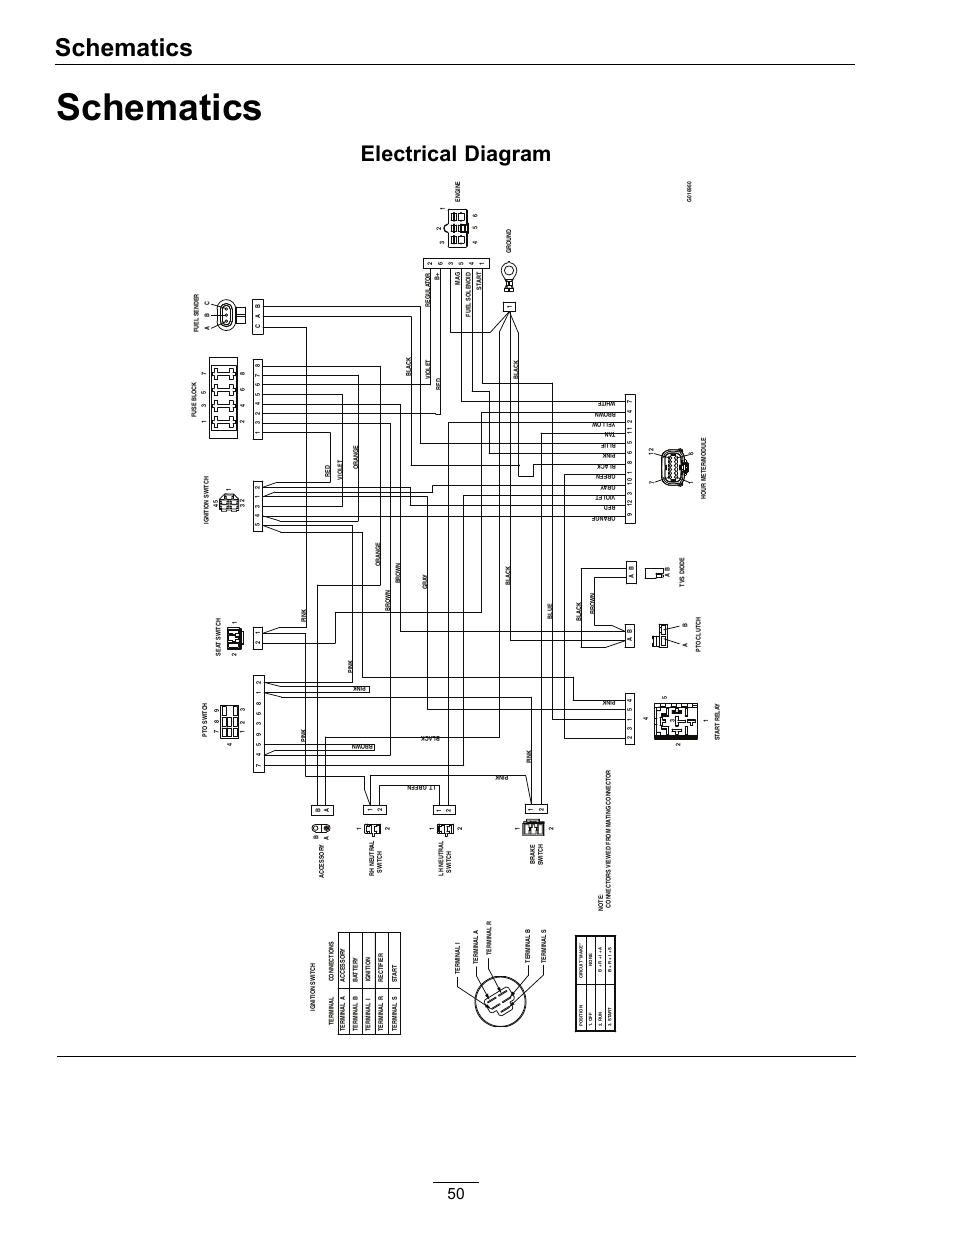 amtrol wiring diagram